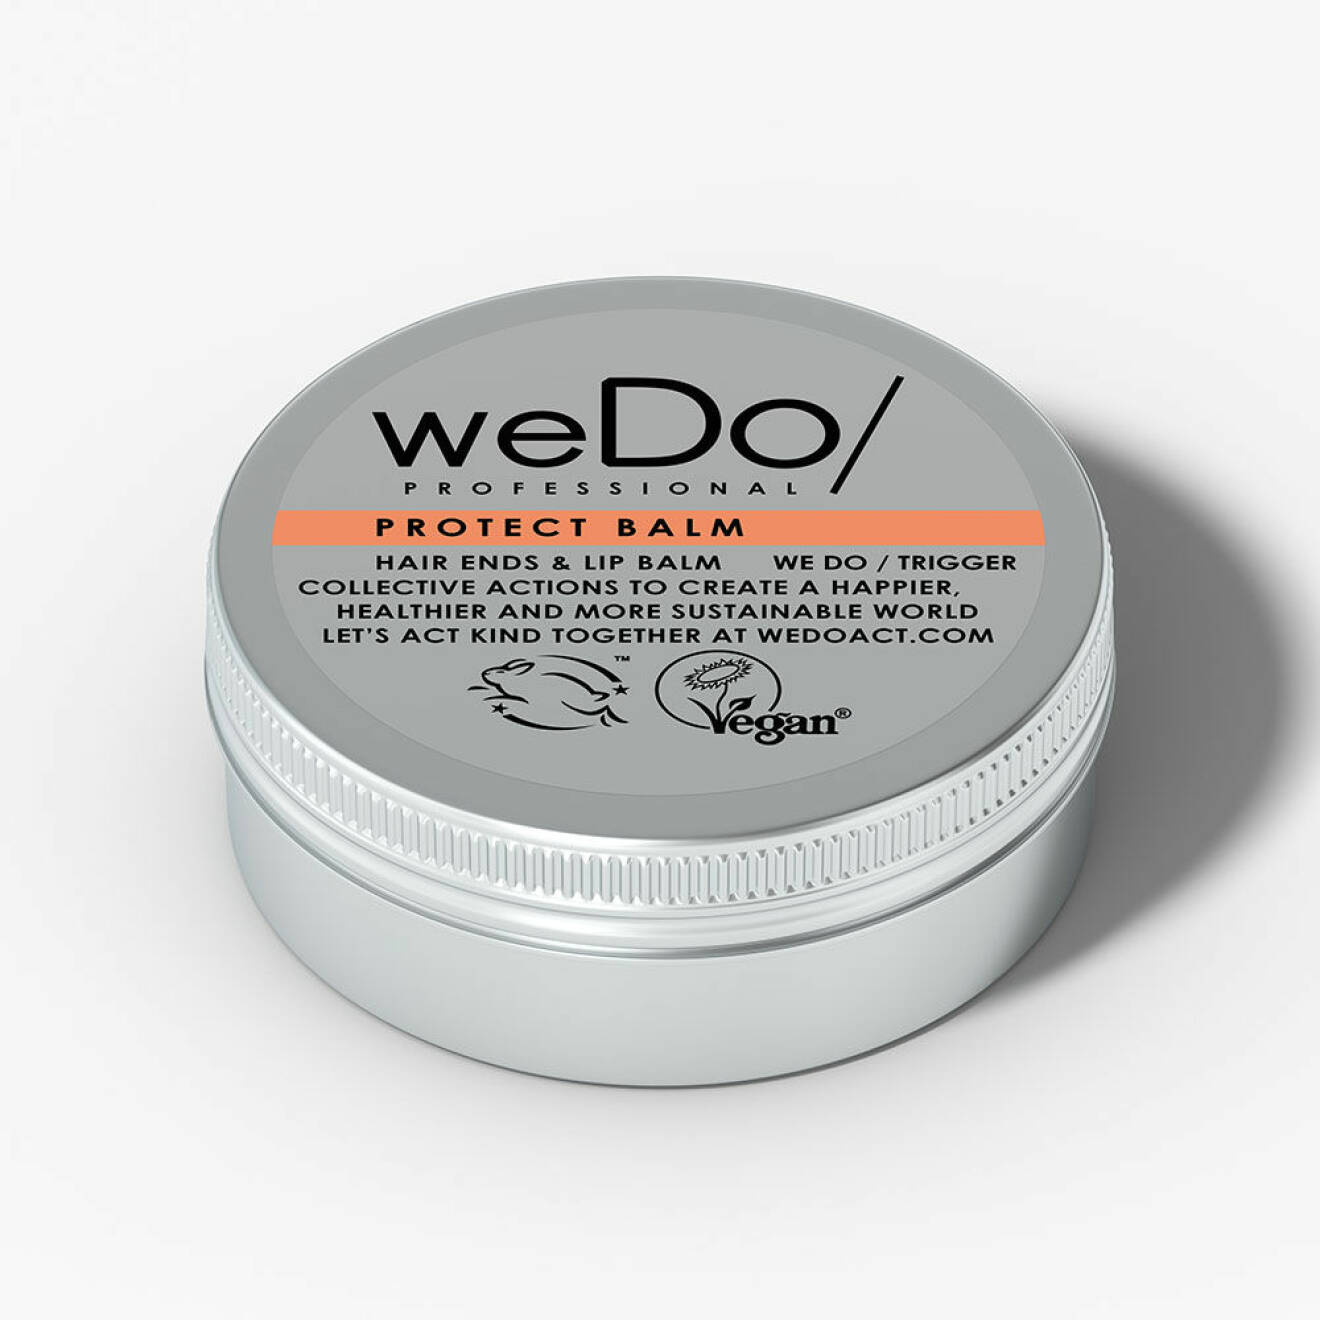 Återfuktande balsam för läpparna är Protect balm från WeDo